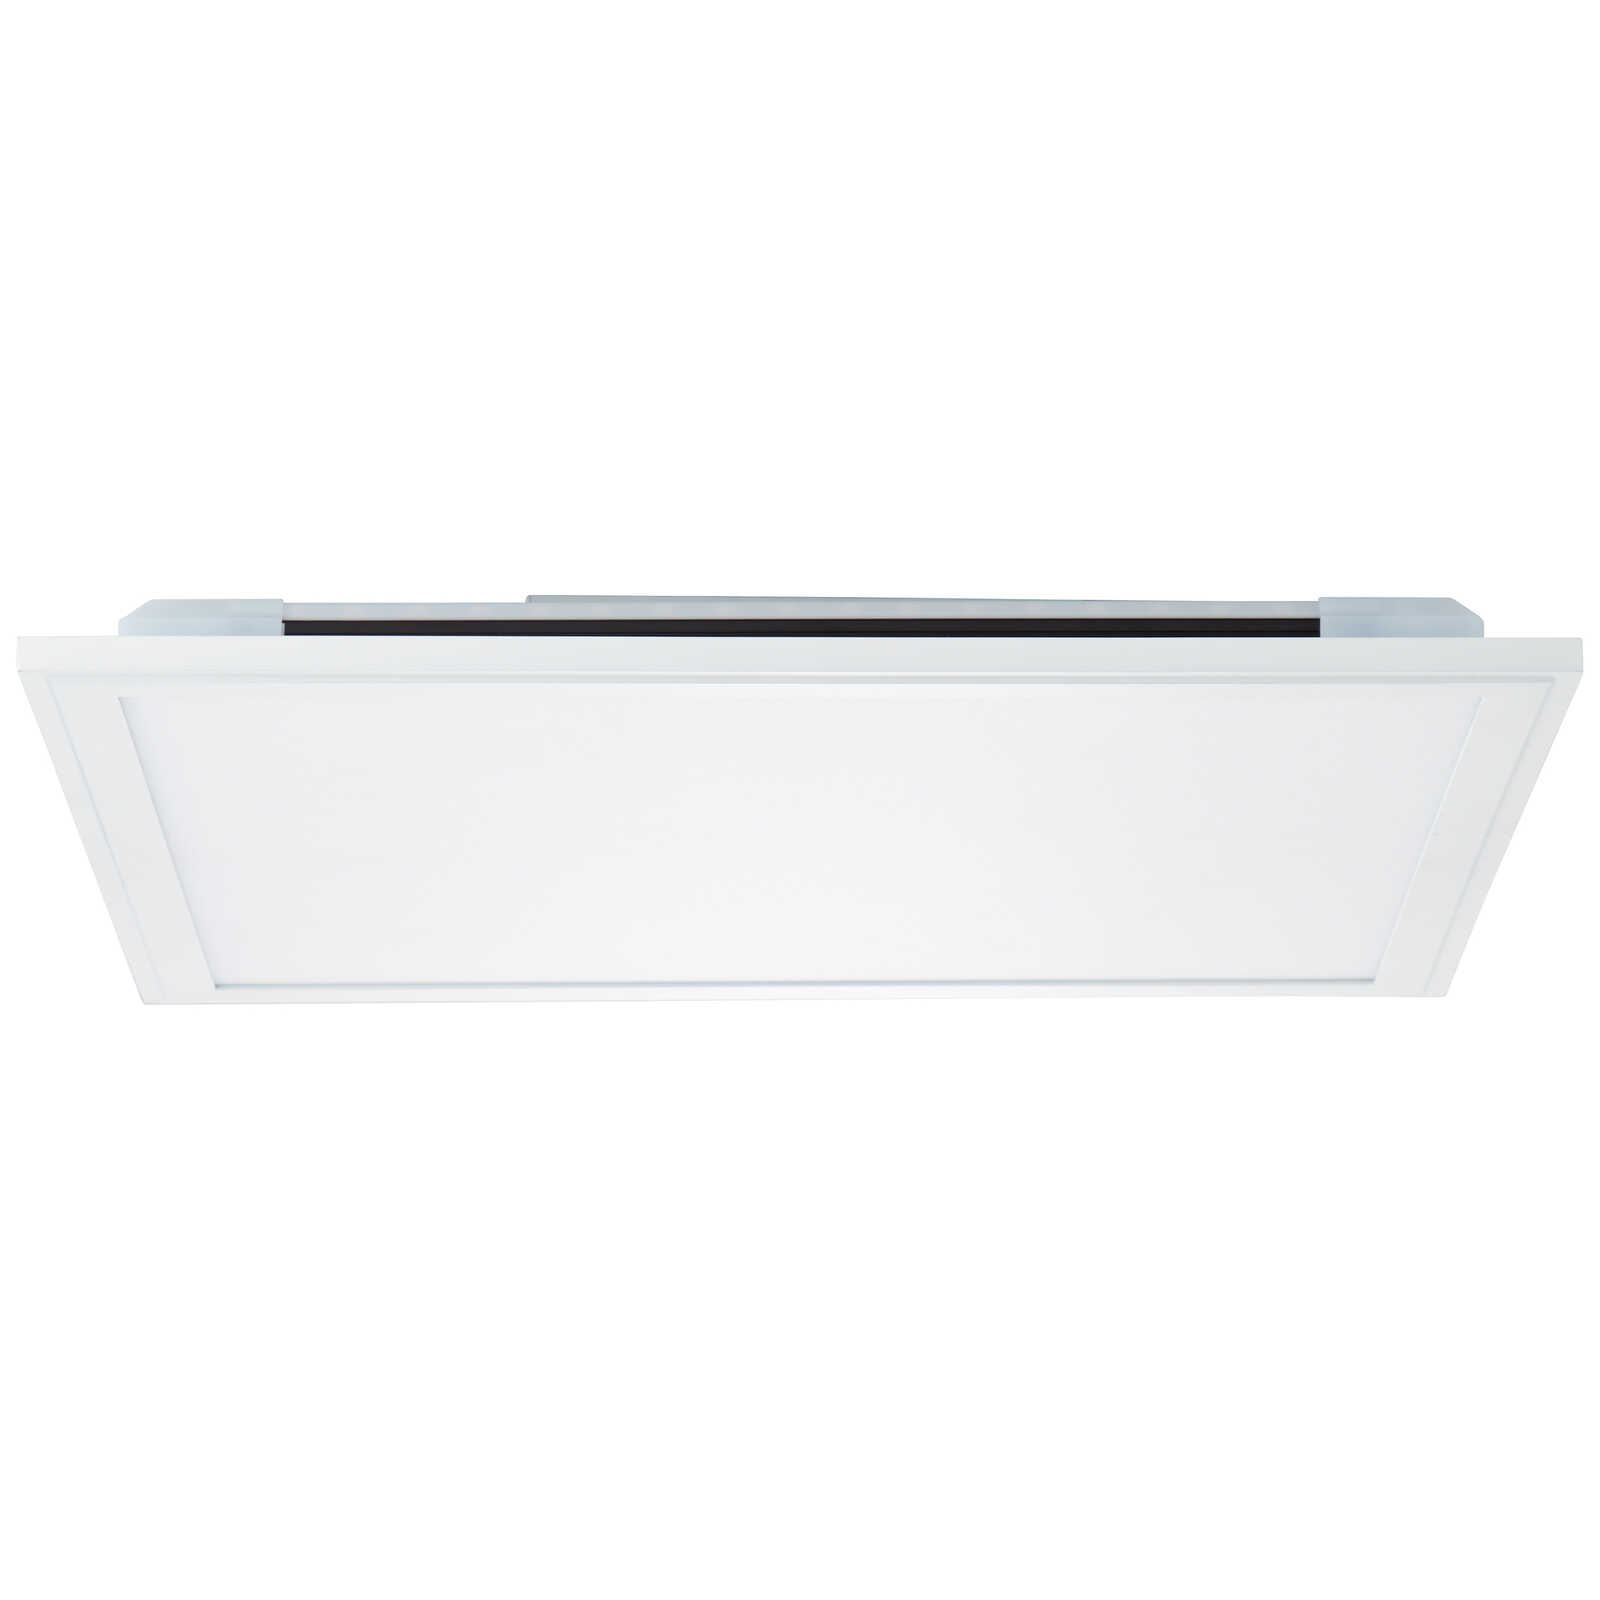             Plastic ceiling light - Albert 1 - White
        